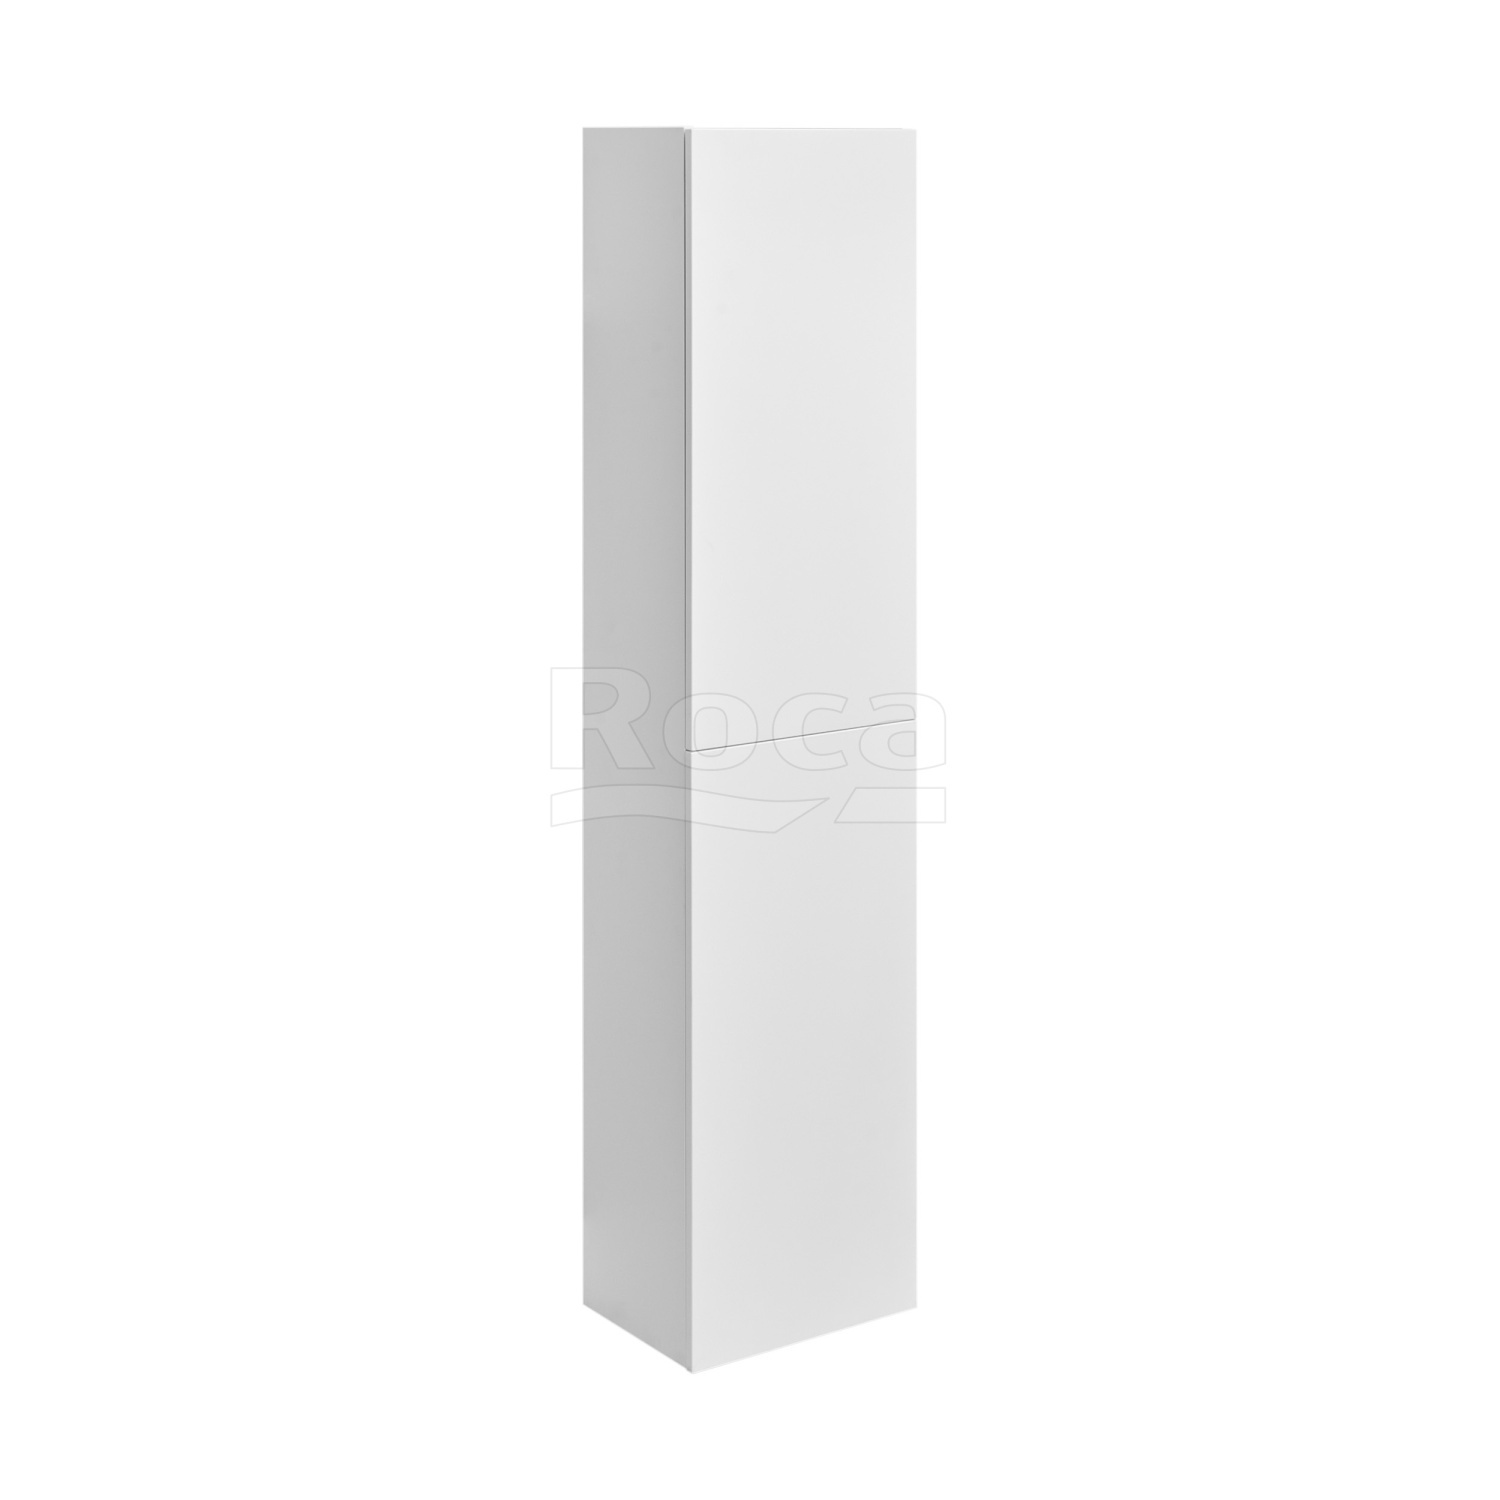 857635509 Roca ONA реверсивная шкаф-колонна 1750 мм, 400x300x1750 мм, белый матовый